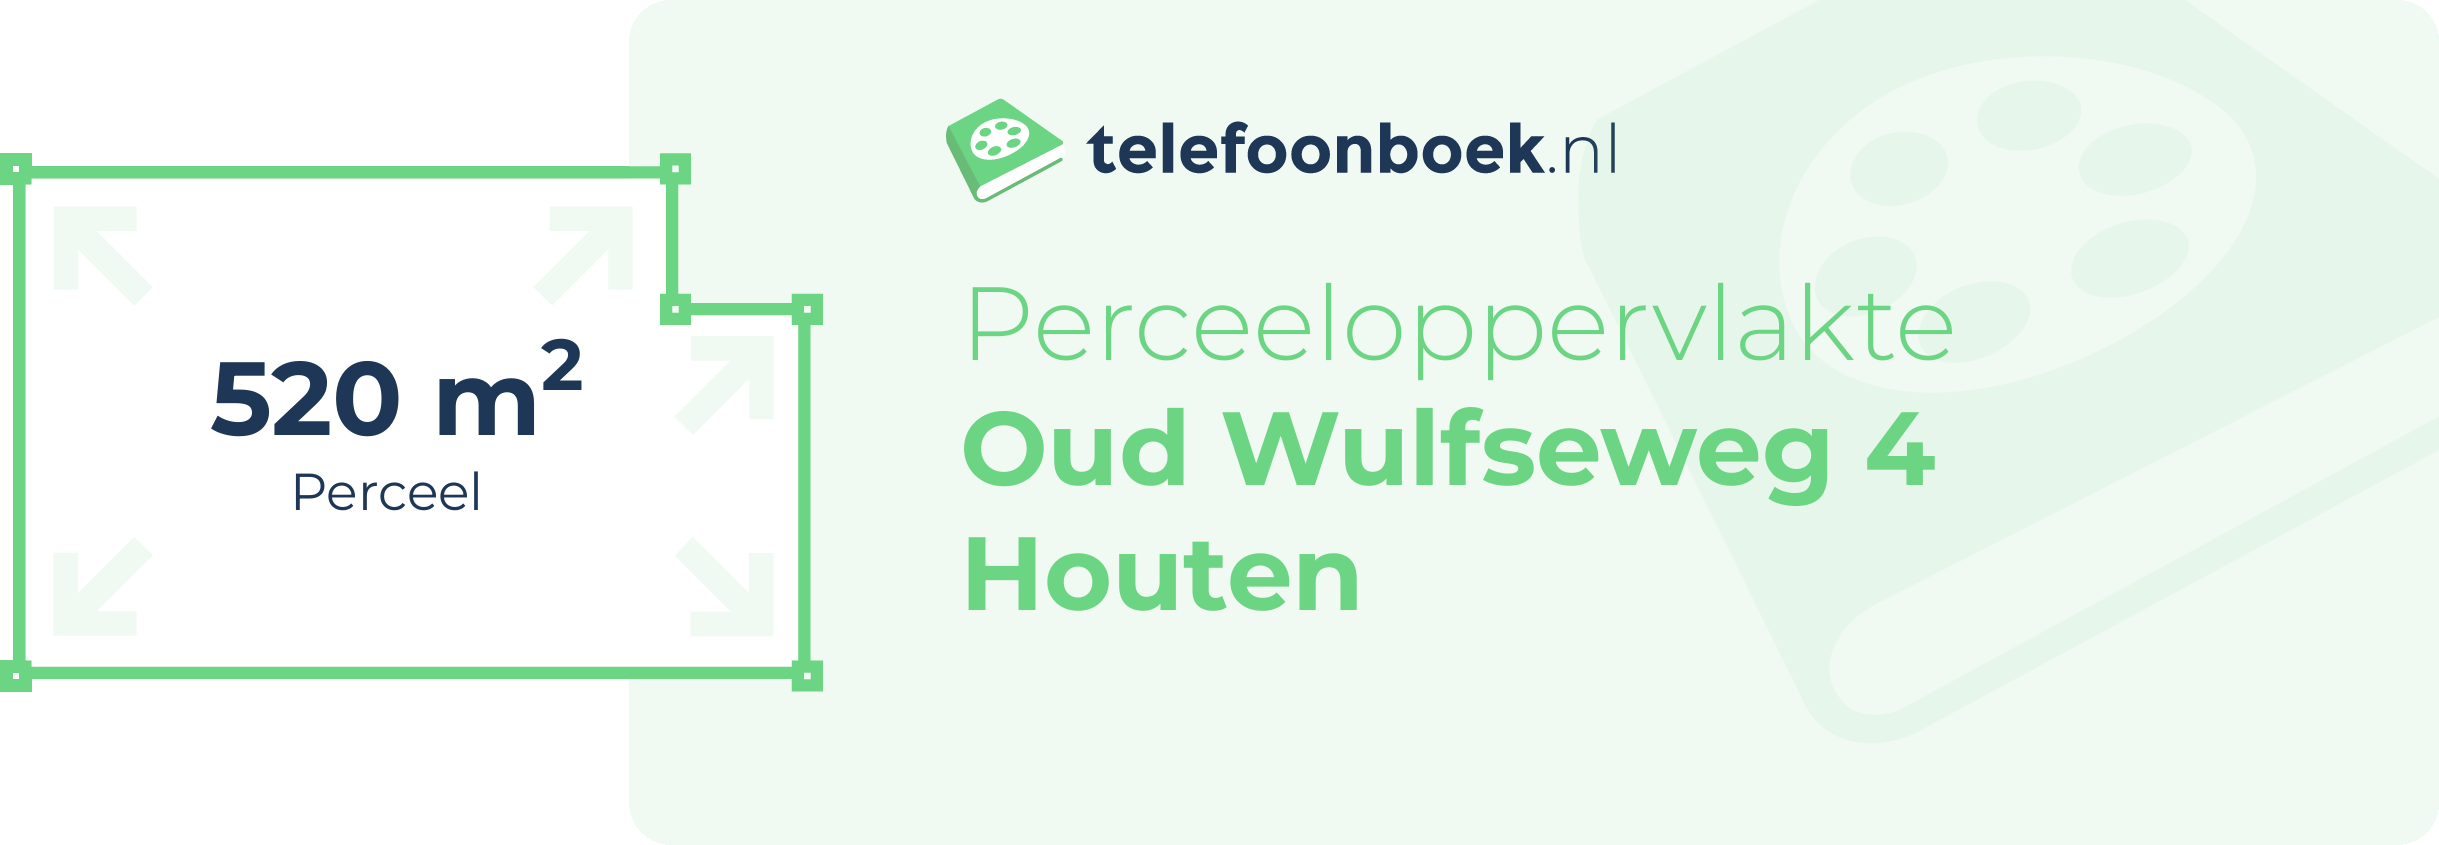 Perceeloppervlakte Oud Wulfseweg 4 Houten